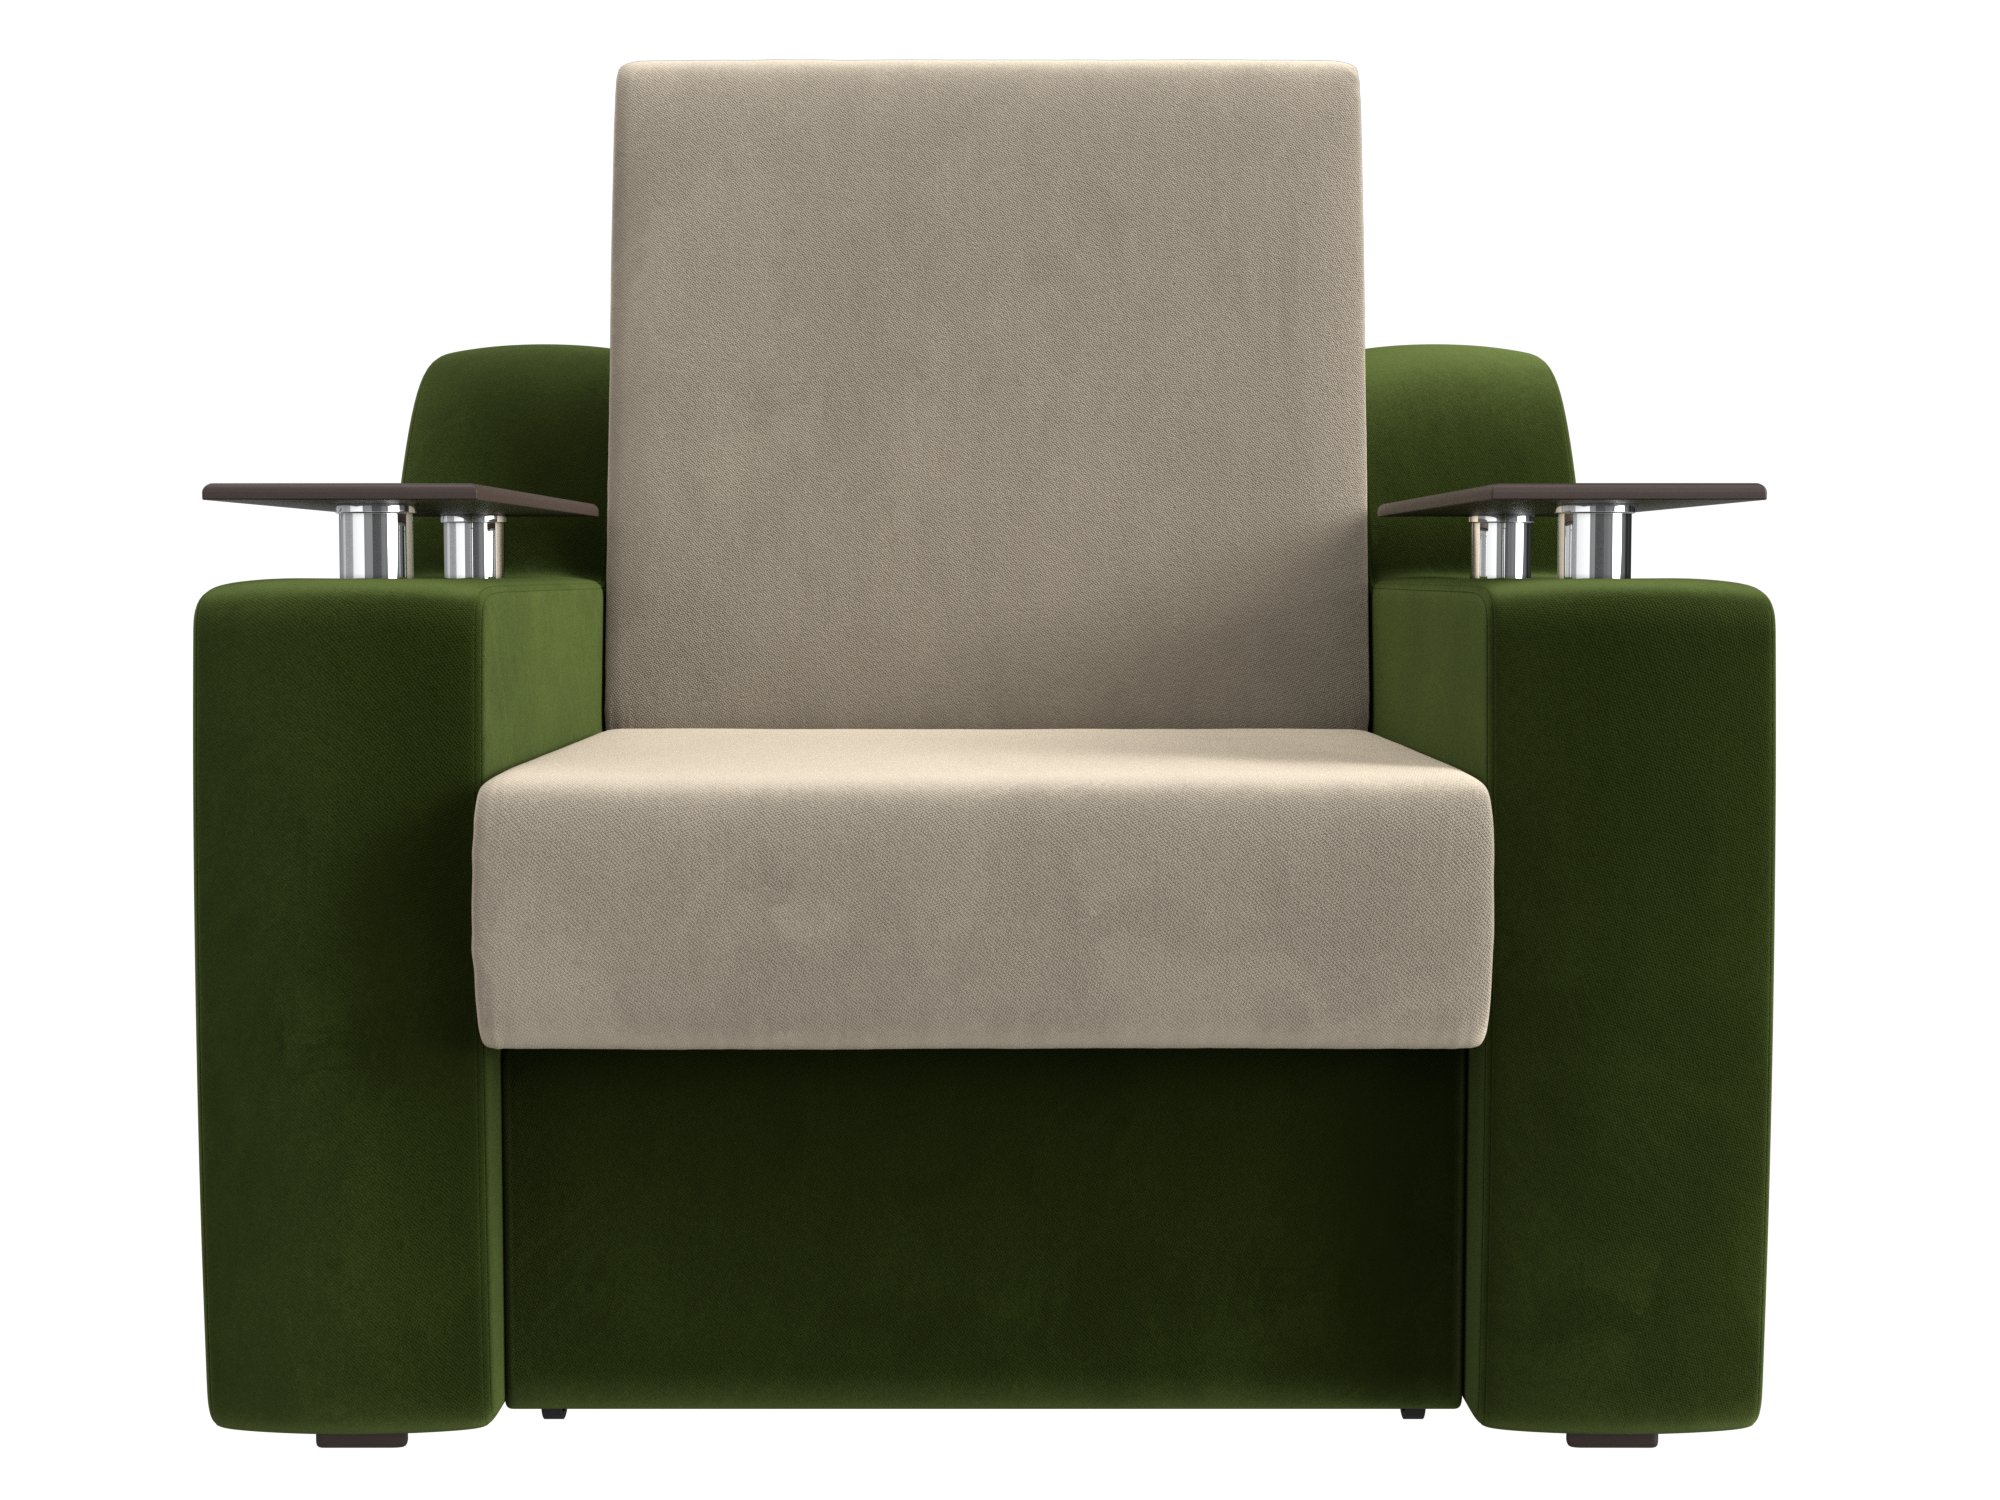 диван кровать сенатор е бежевый зеленый микровельвет Кресло-кровать Сенатор (60х190) MebelVia Бежевый, Зеленый, Микровельвет, ЛДСП